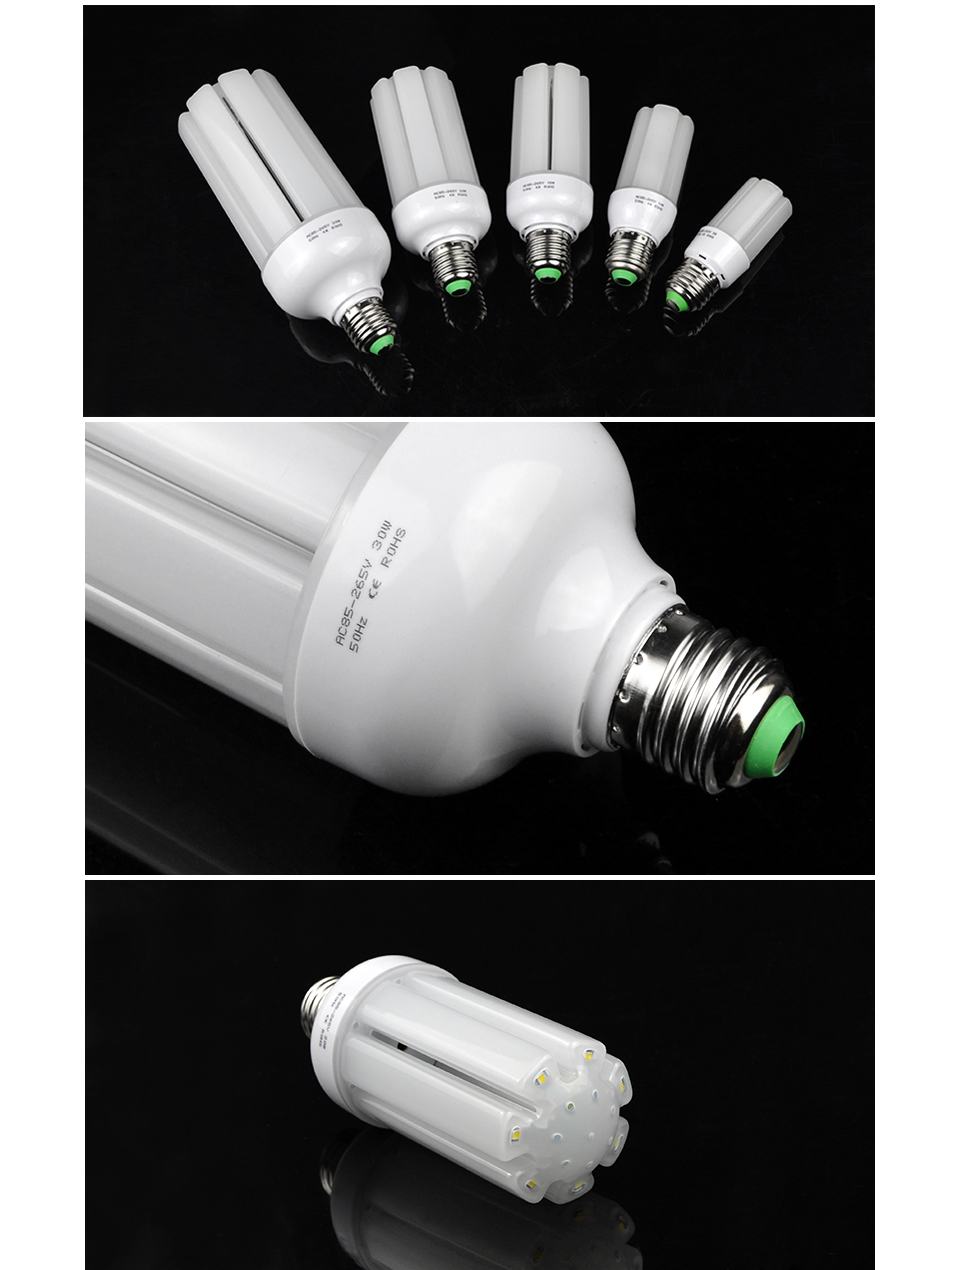 LED PIR Motion Sensor light lamp Bulb E27 110V 220V 5W 10W 15W 20W 30W 2835 SMD Induction Infrared lamp base Switch Holder